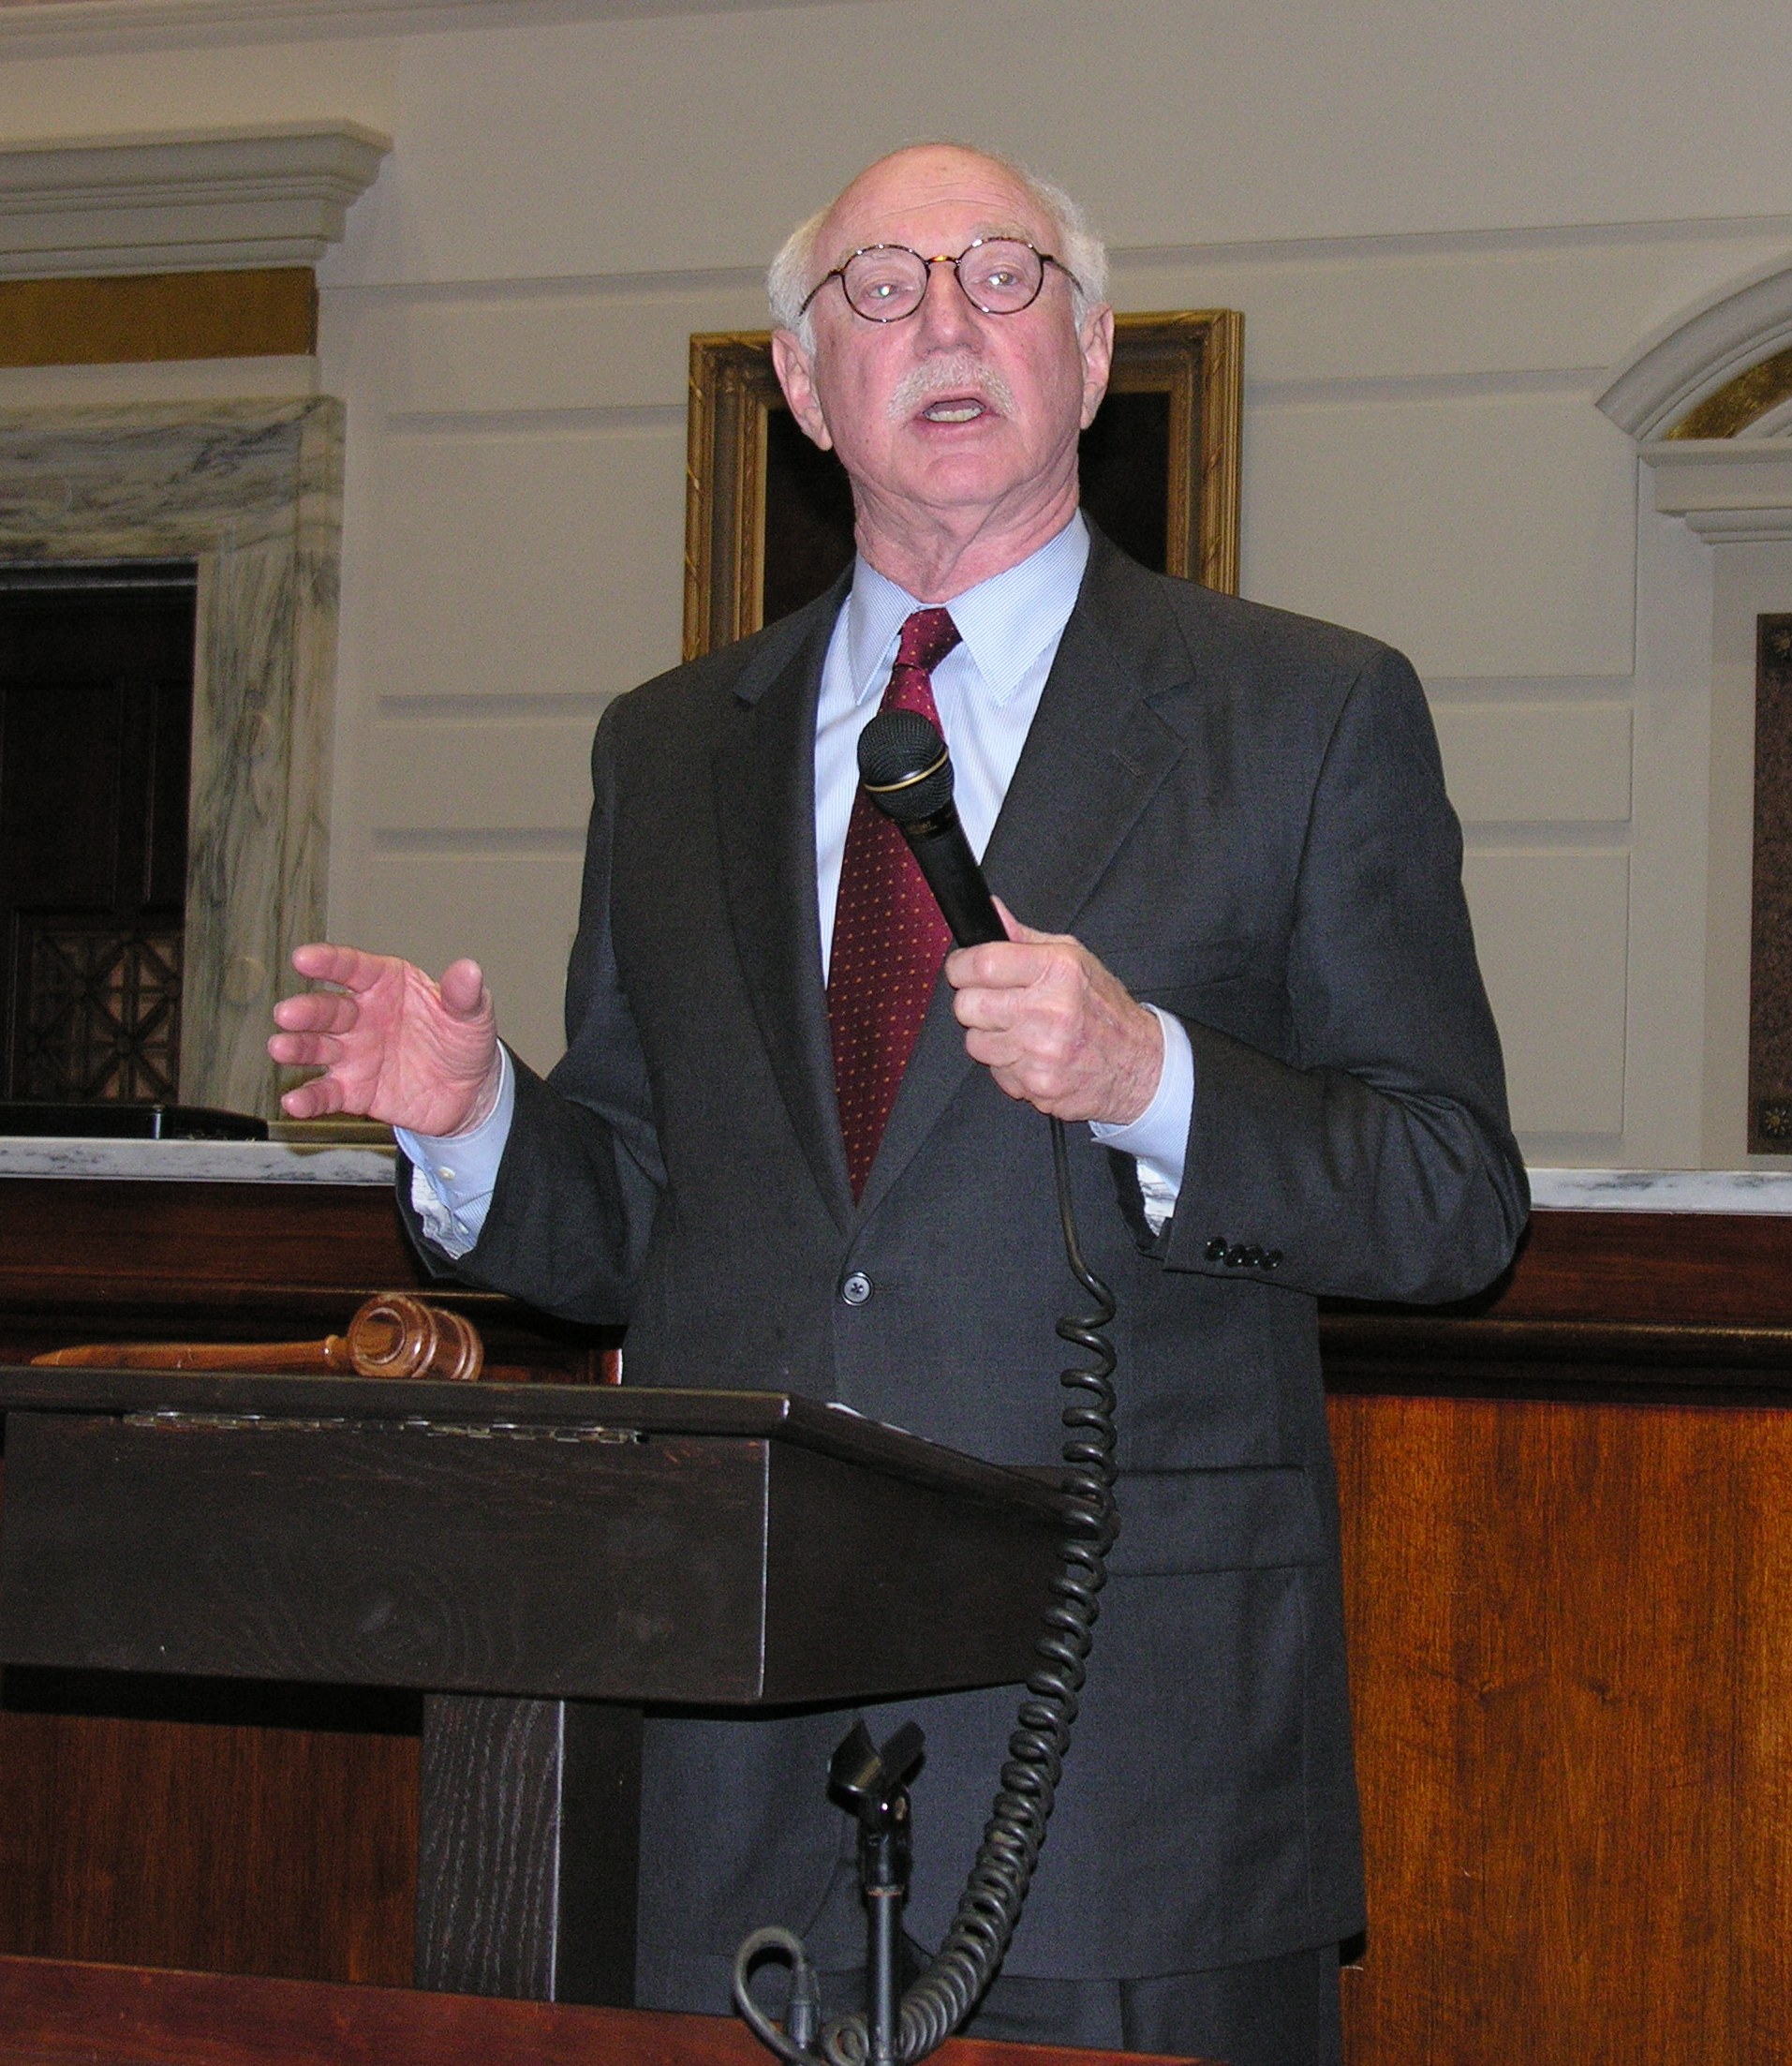 U.S. Chamber of Commerce Senior VP Arthur J. Rothkopf